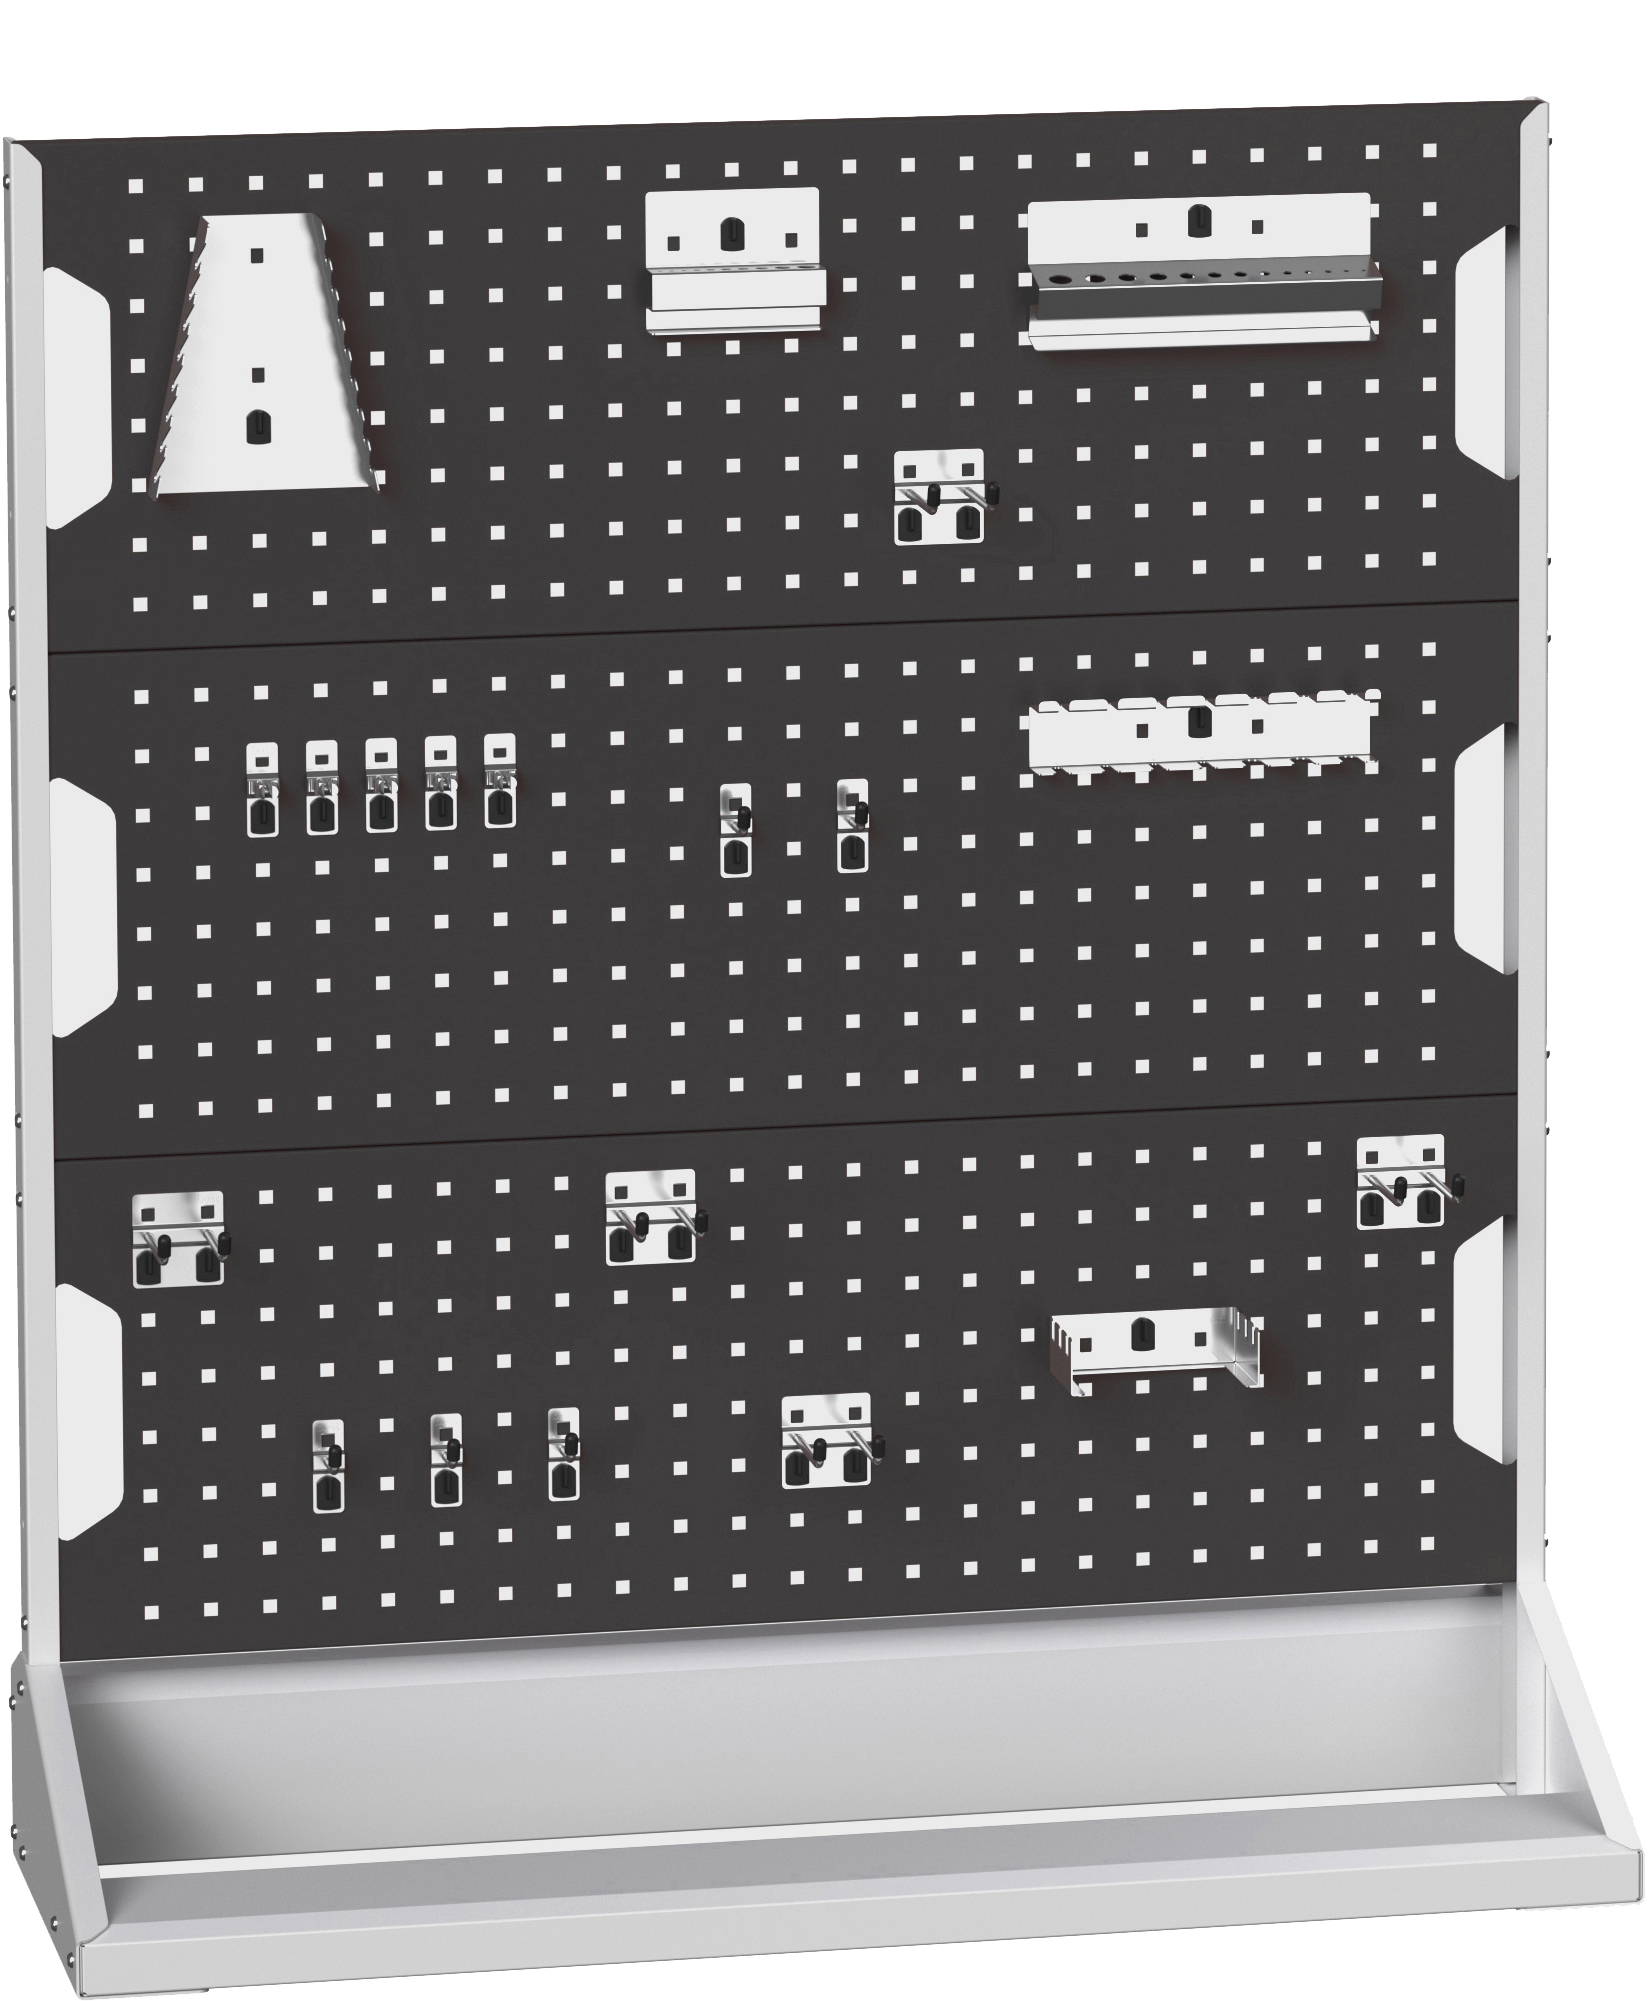 Bott Perfo Panel Rack (Single Sided) - 16917300.19V